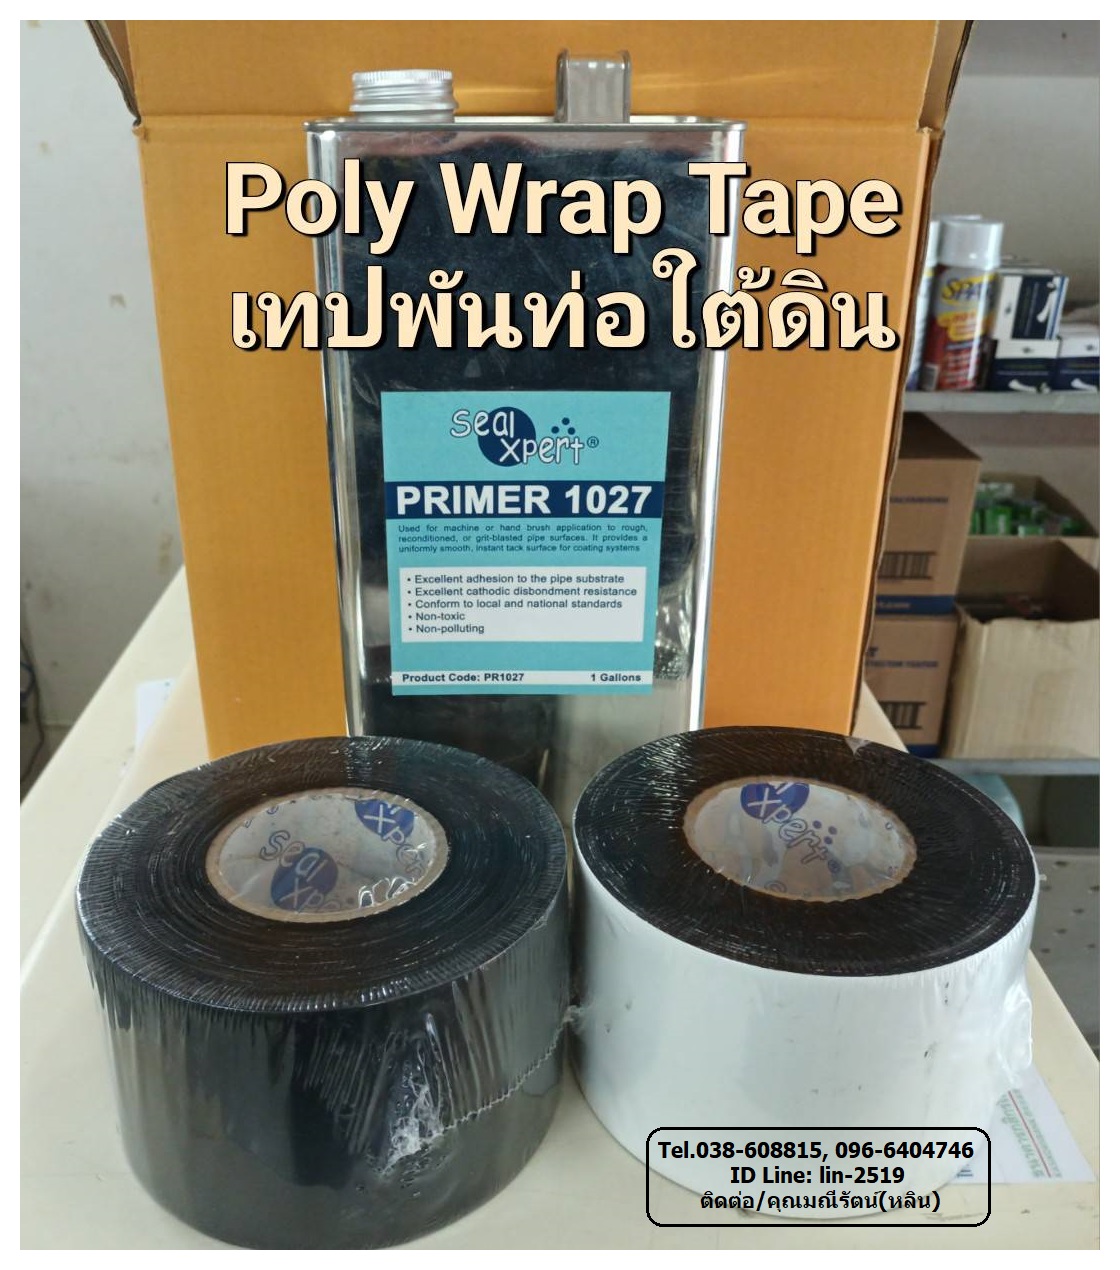 รูปภาพ Seal Xpert Poly Wrap Tape เทปพันท่อใต้ดินใช้พันท่อก่อนฝังดิน นำเข้าจากสิงคโปร์ เทปพีอีพันท่อเพื่อป้องกันสนิม การกัดกร่อน และแรงกระแทกจากการกลบฝัง ตามมาตรฐาน AWWA C-214